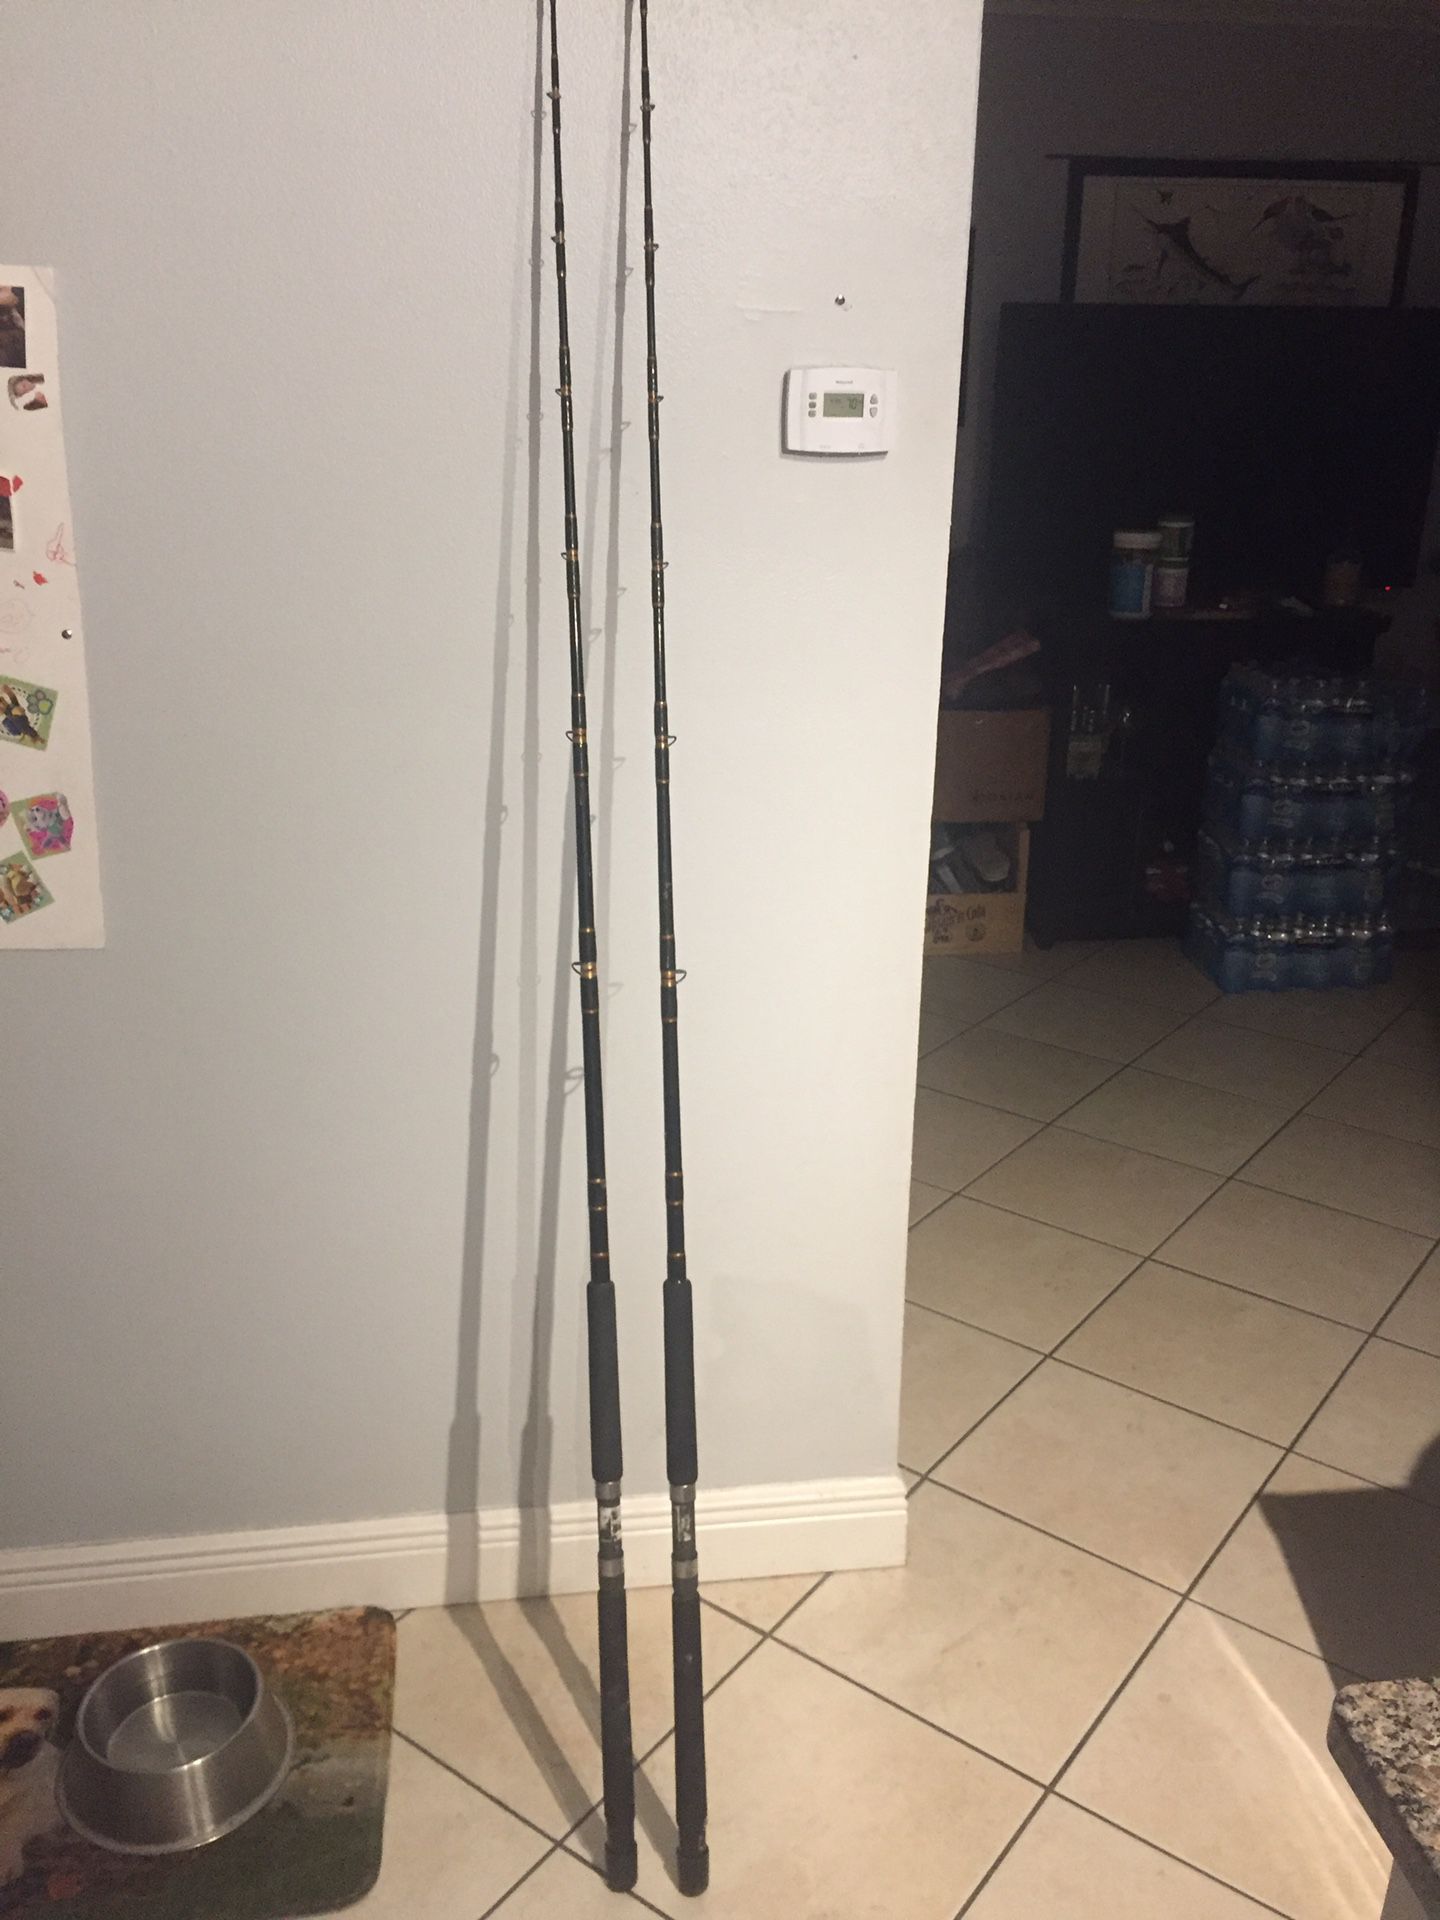 2 Penn power sticks fishing rods $60